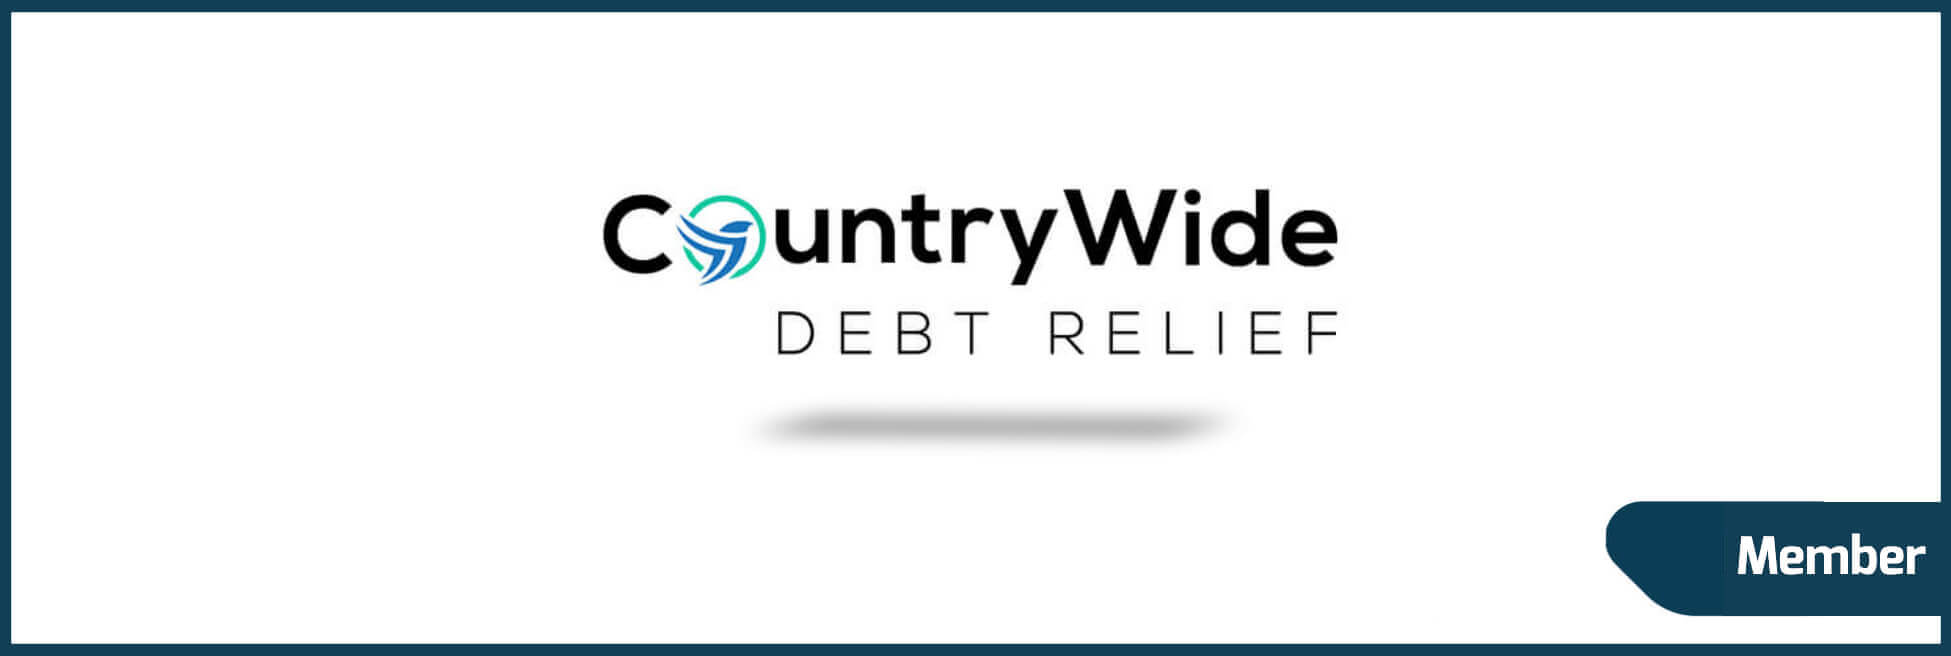 Countrywide Debt Relief, LLC